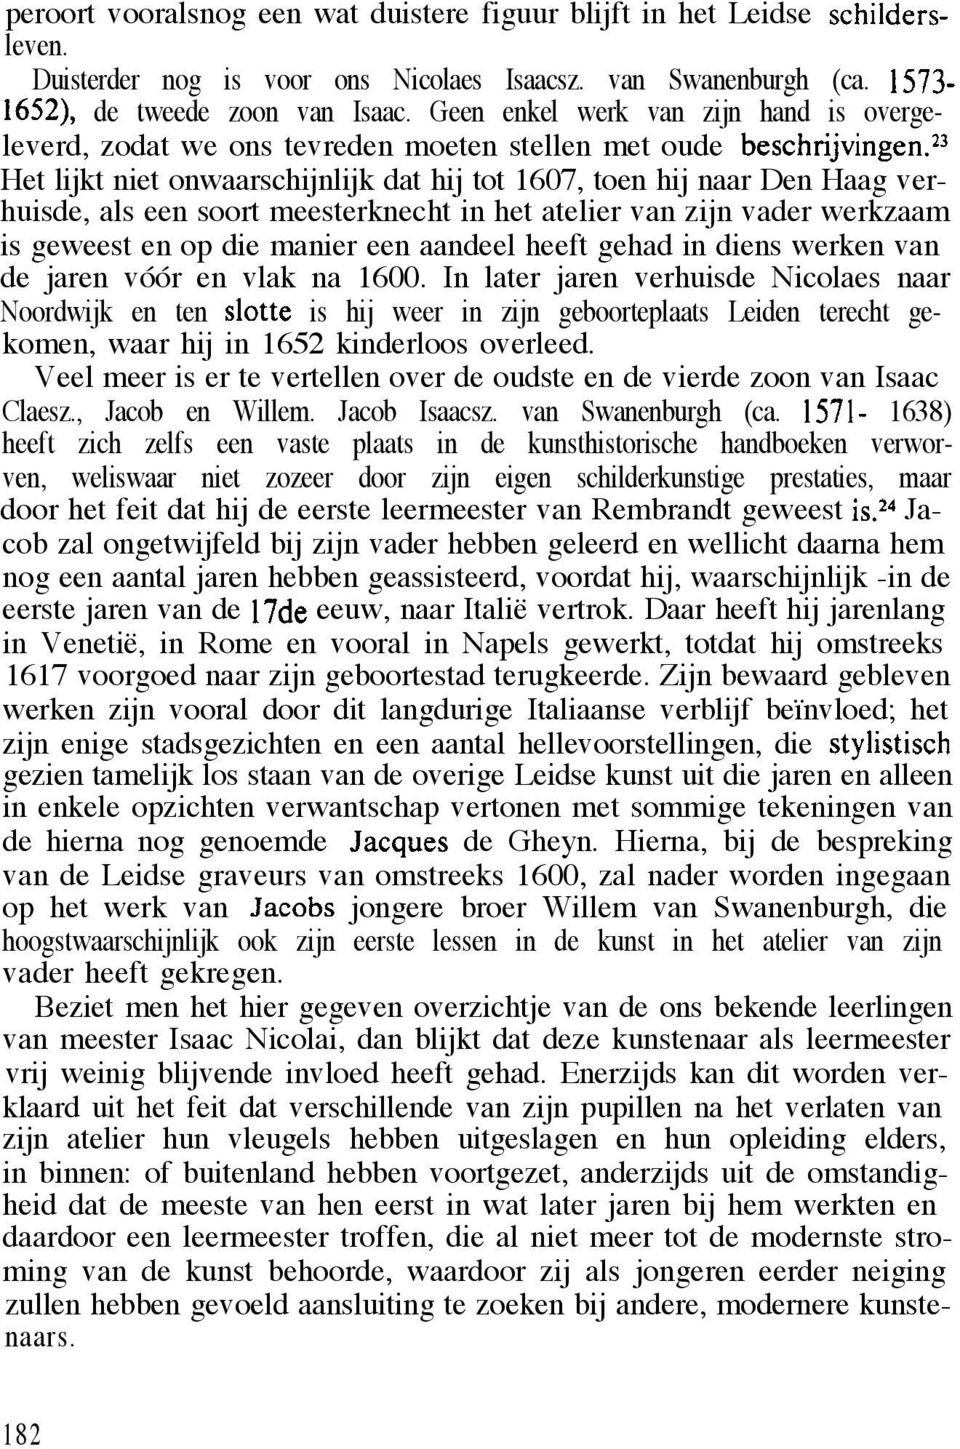 23 Het lijkt niet onwaarschijnlijk dat hij tot 1607, toen hij naar Den Haag verhuisde, als een soort meesterknecht in het atelier van zijn vader werkzaam is geweest en op die manier een aandeel heeft